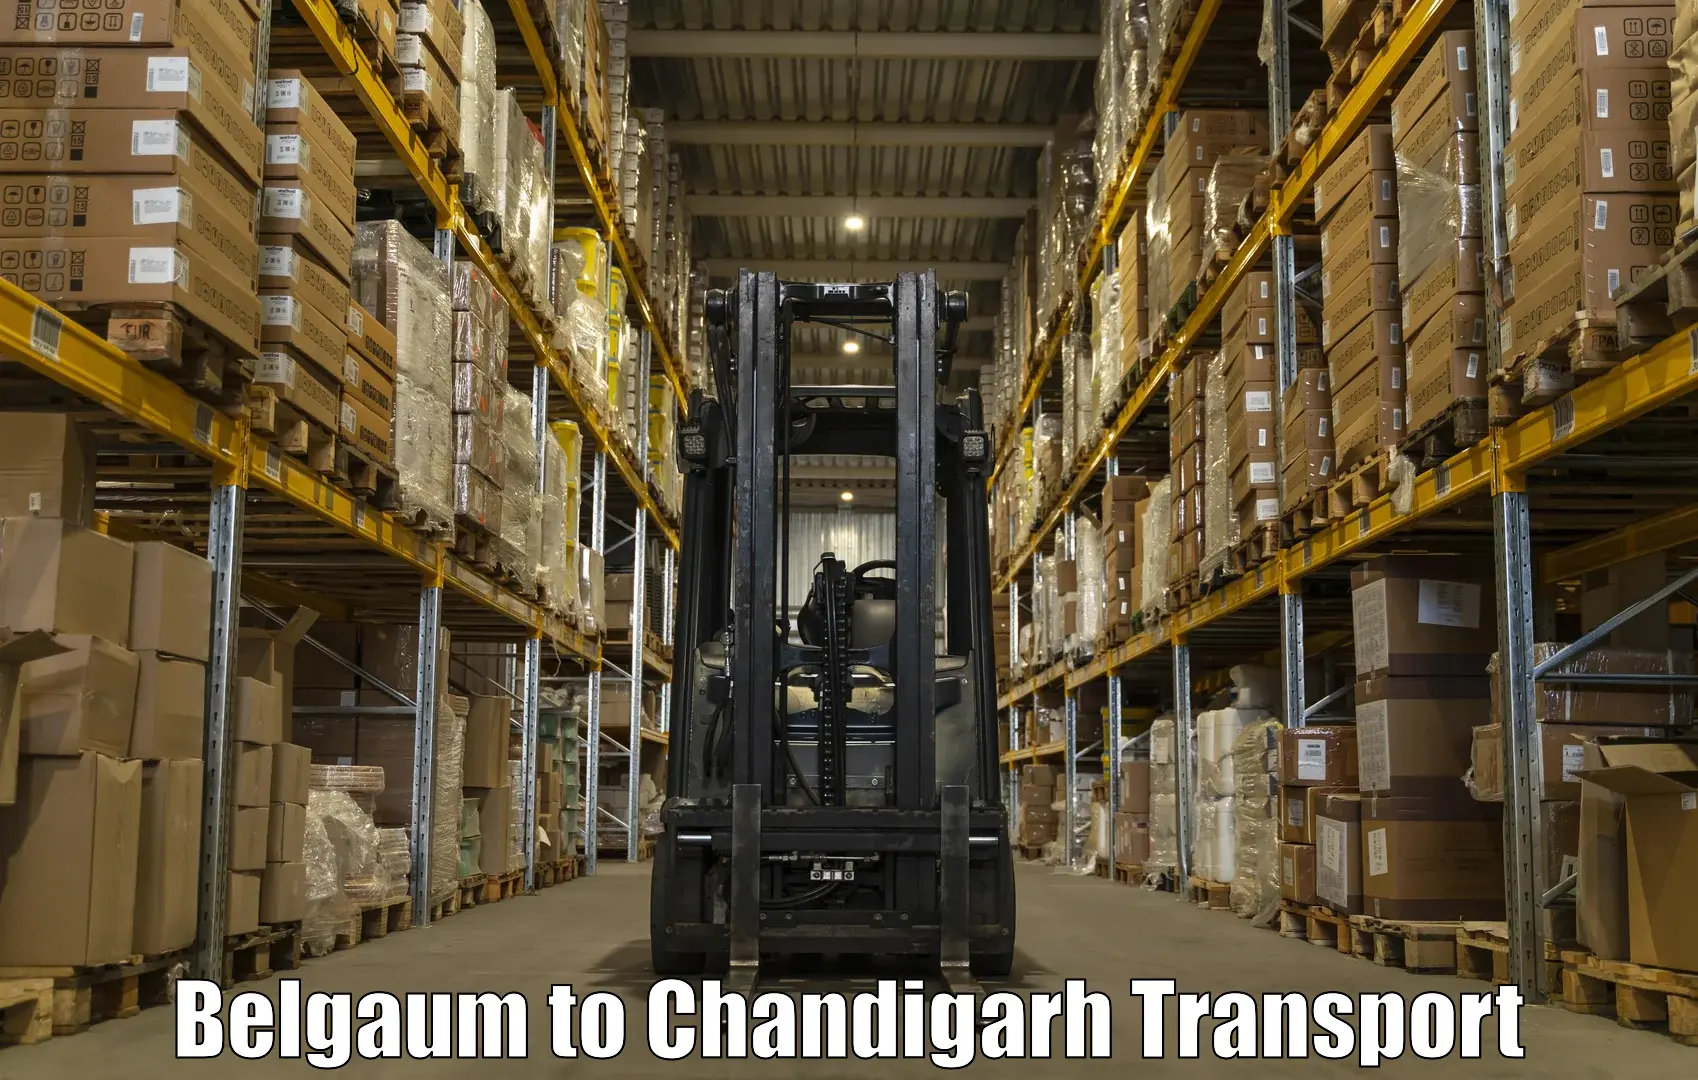 Road transport online services Belgaum to Chandigarh